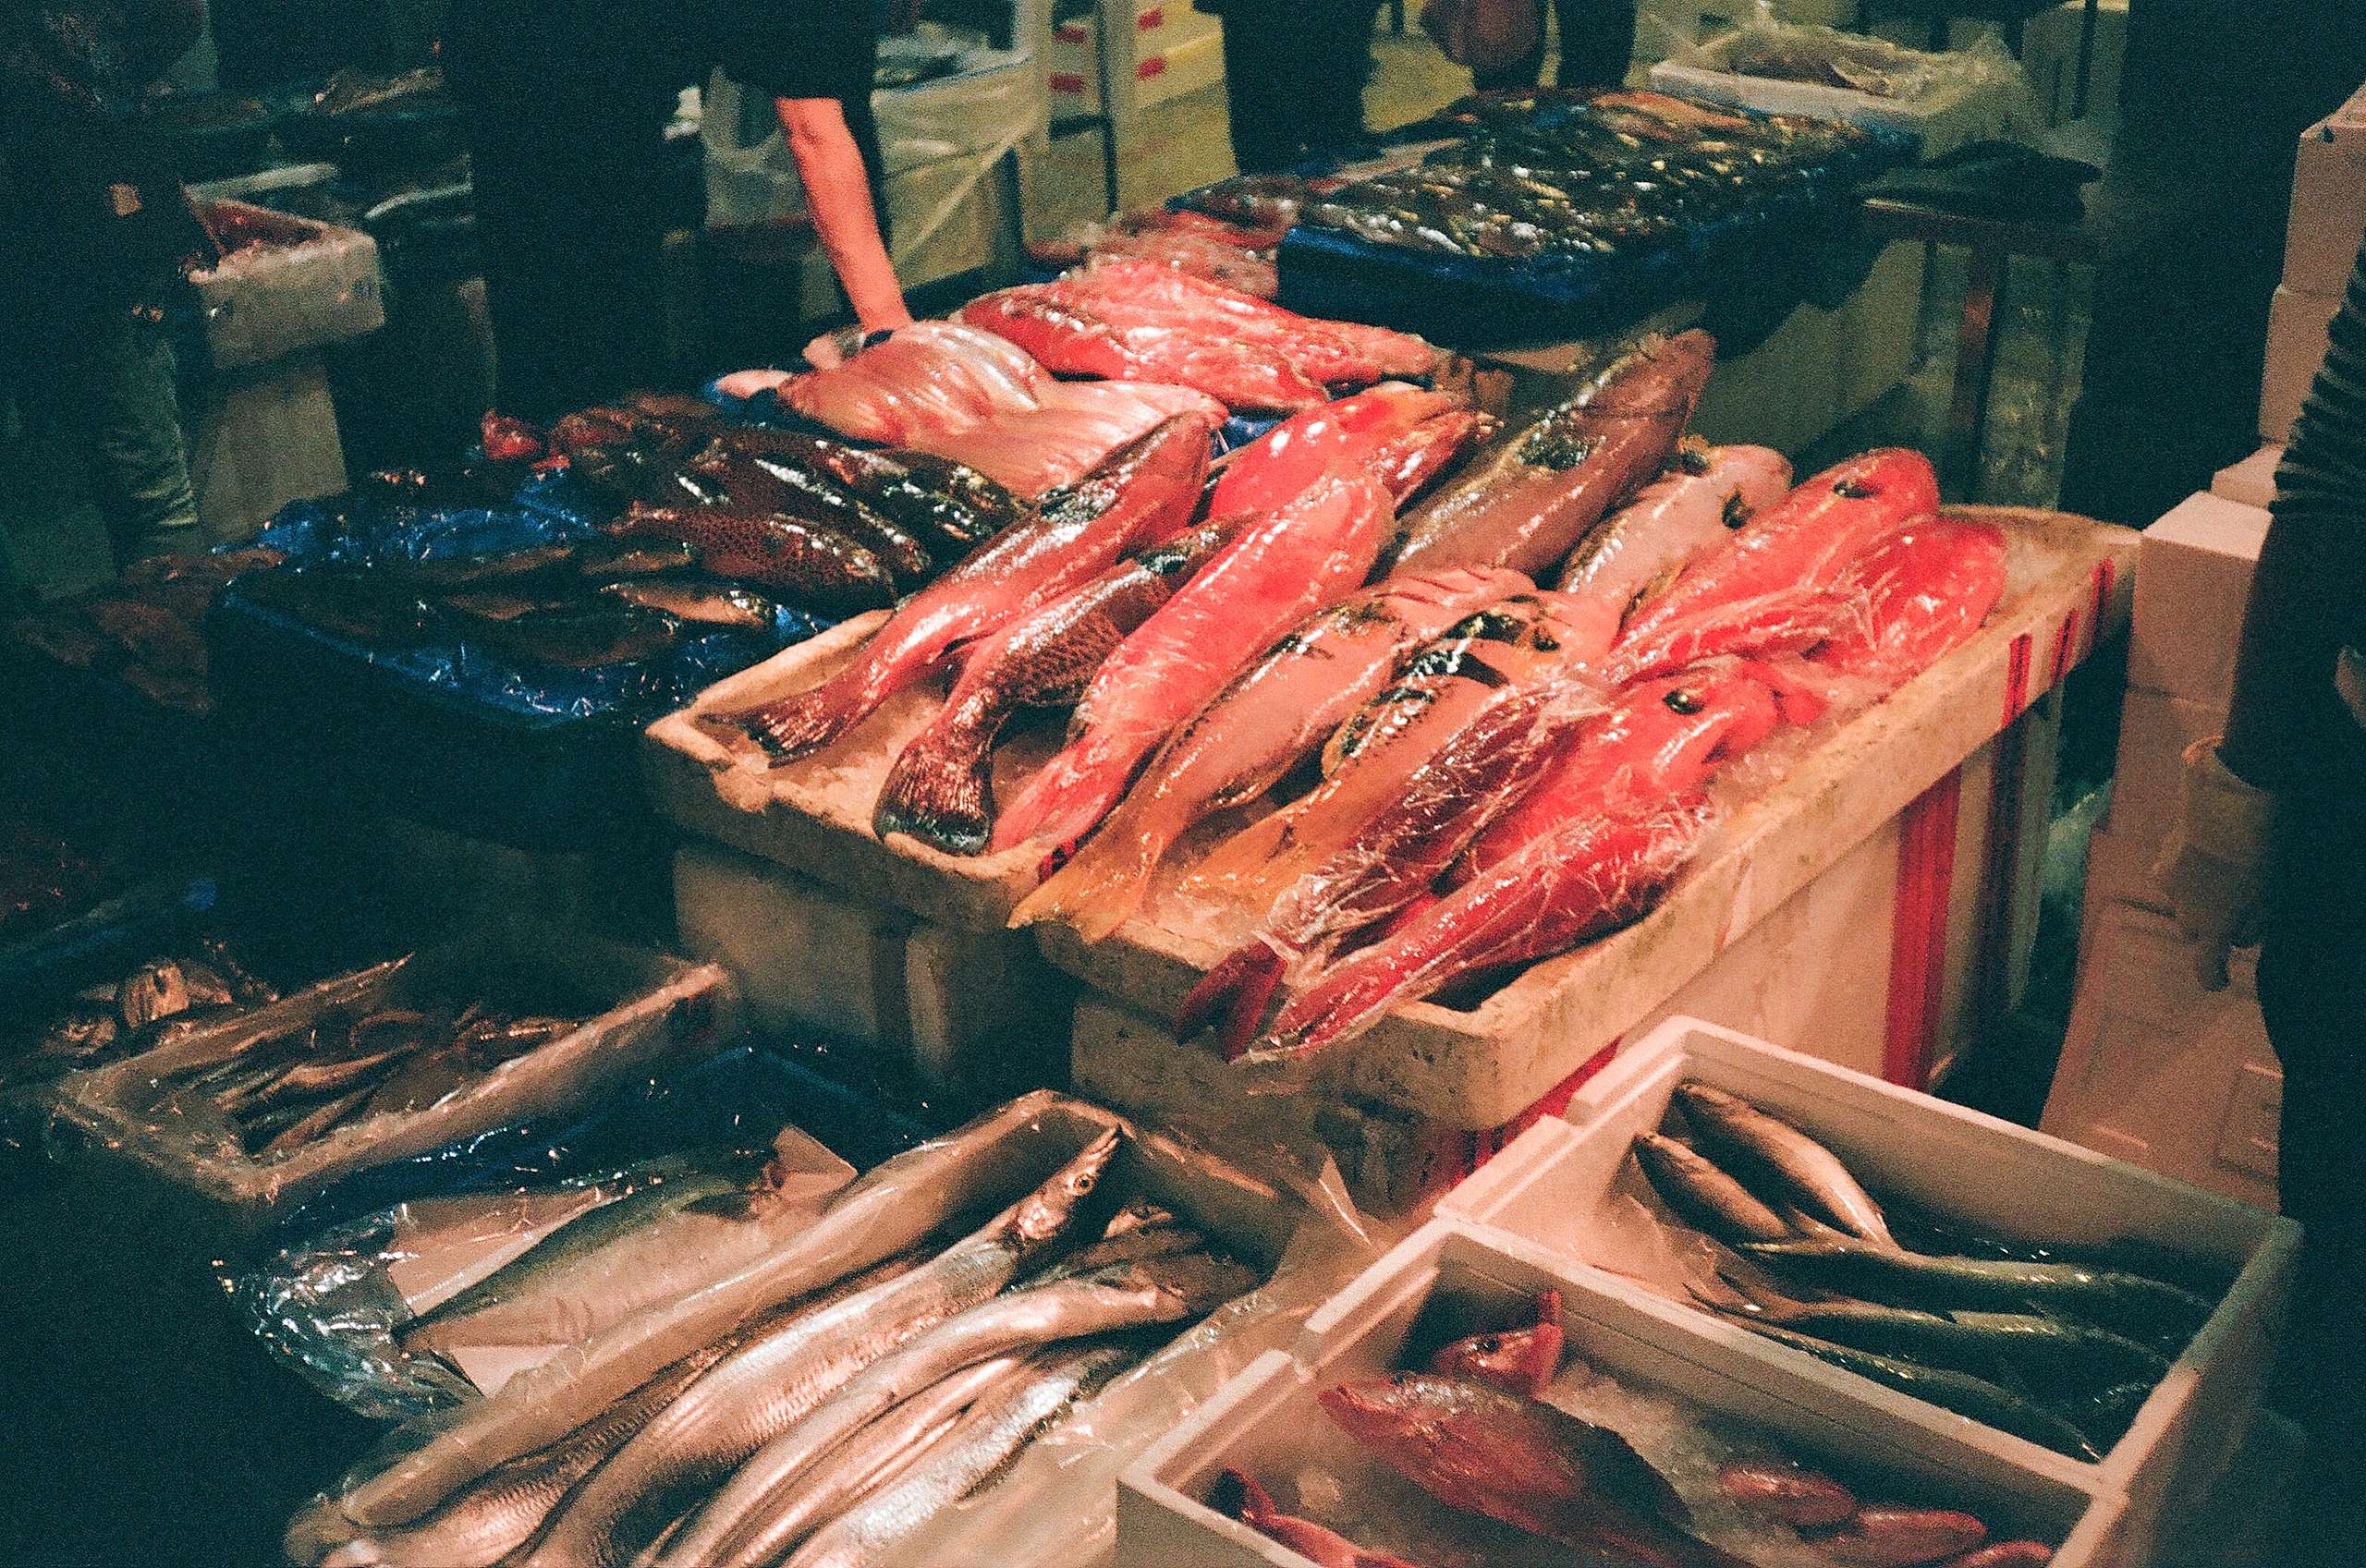 臺灣許多漁港附近的漁貨攤販，是愛吃海鮮的饕客獲取新鮮食材的好所在。但近年來漁貨量大跌，使您我不得不重新審視是否有更永續的選擇。